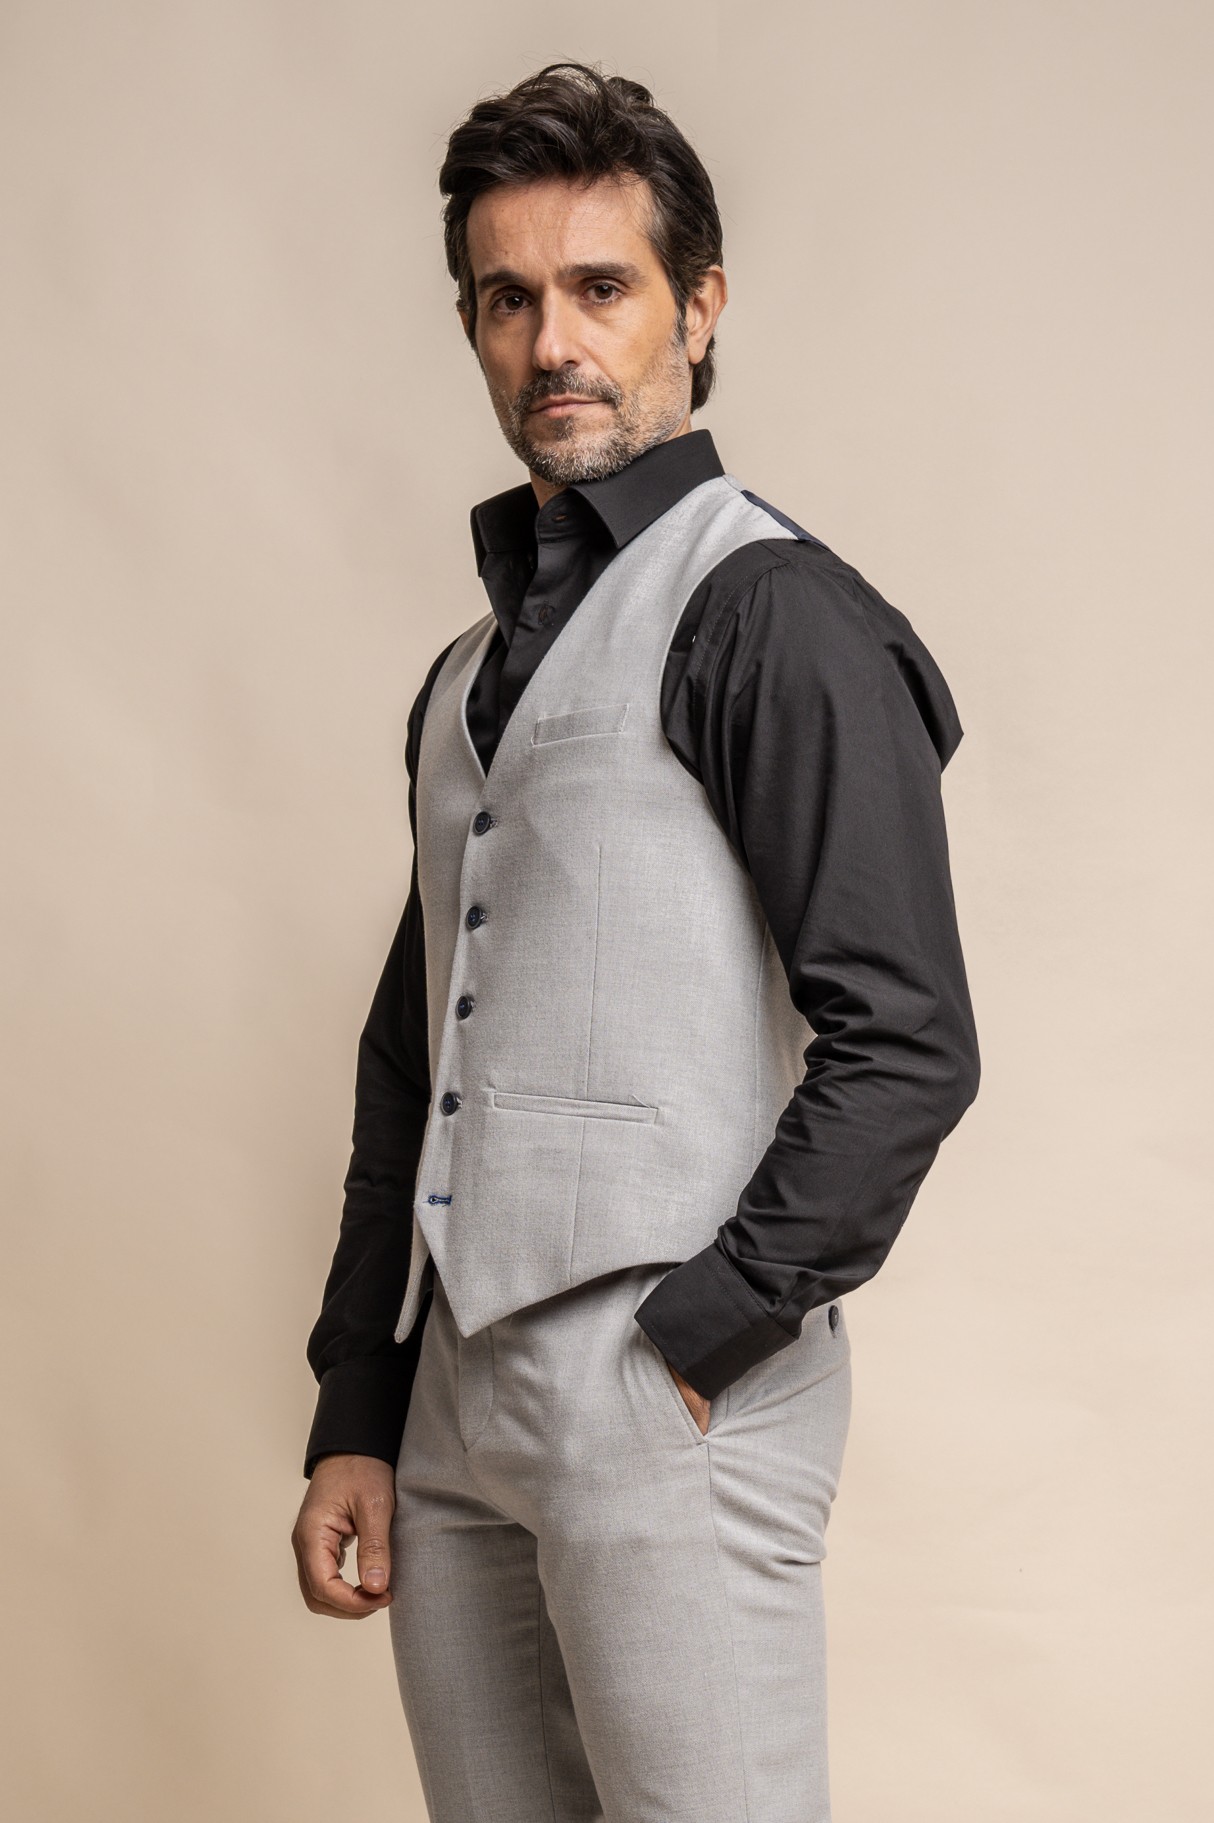   Men's Tweed Slim Fit Formal Suit - FURIOUS Ivory